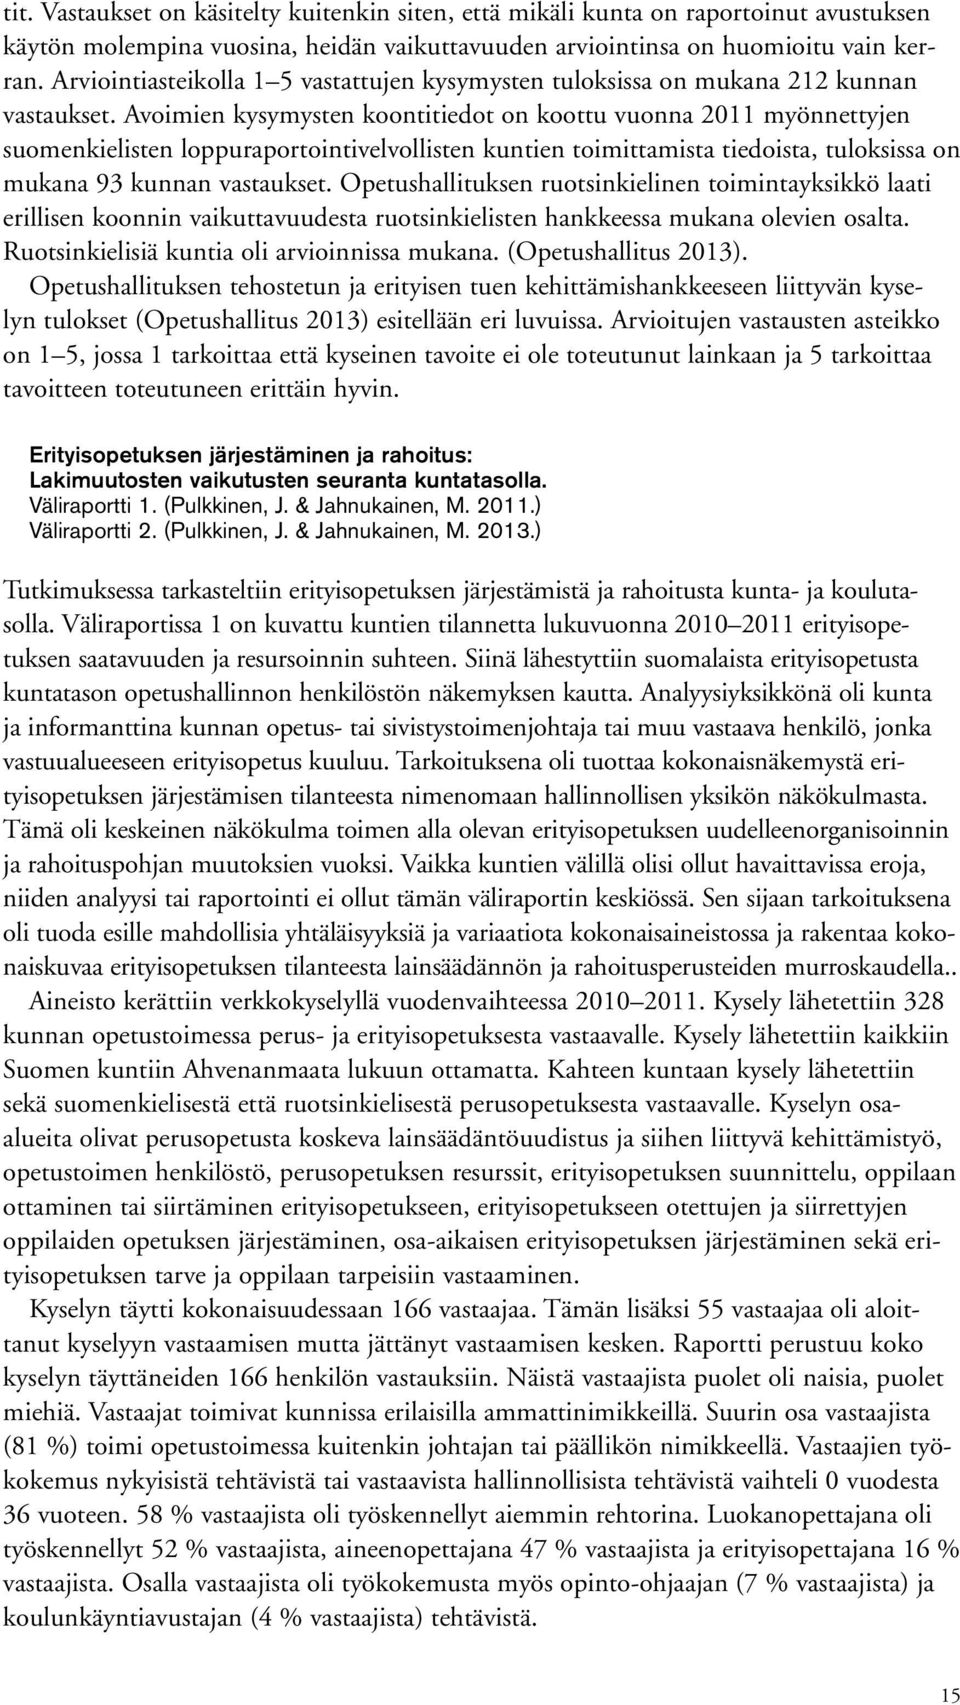 Avoimien kysymysten koontitiedot on koottu vuonna 2011 myönnettyjen suomenkielisten loppuraportointivelvollisten kuntien toimittamista tiedoista, tuloksissa on mukana 93 kunnan vastaukset.